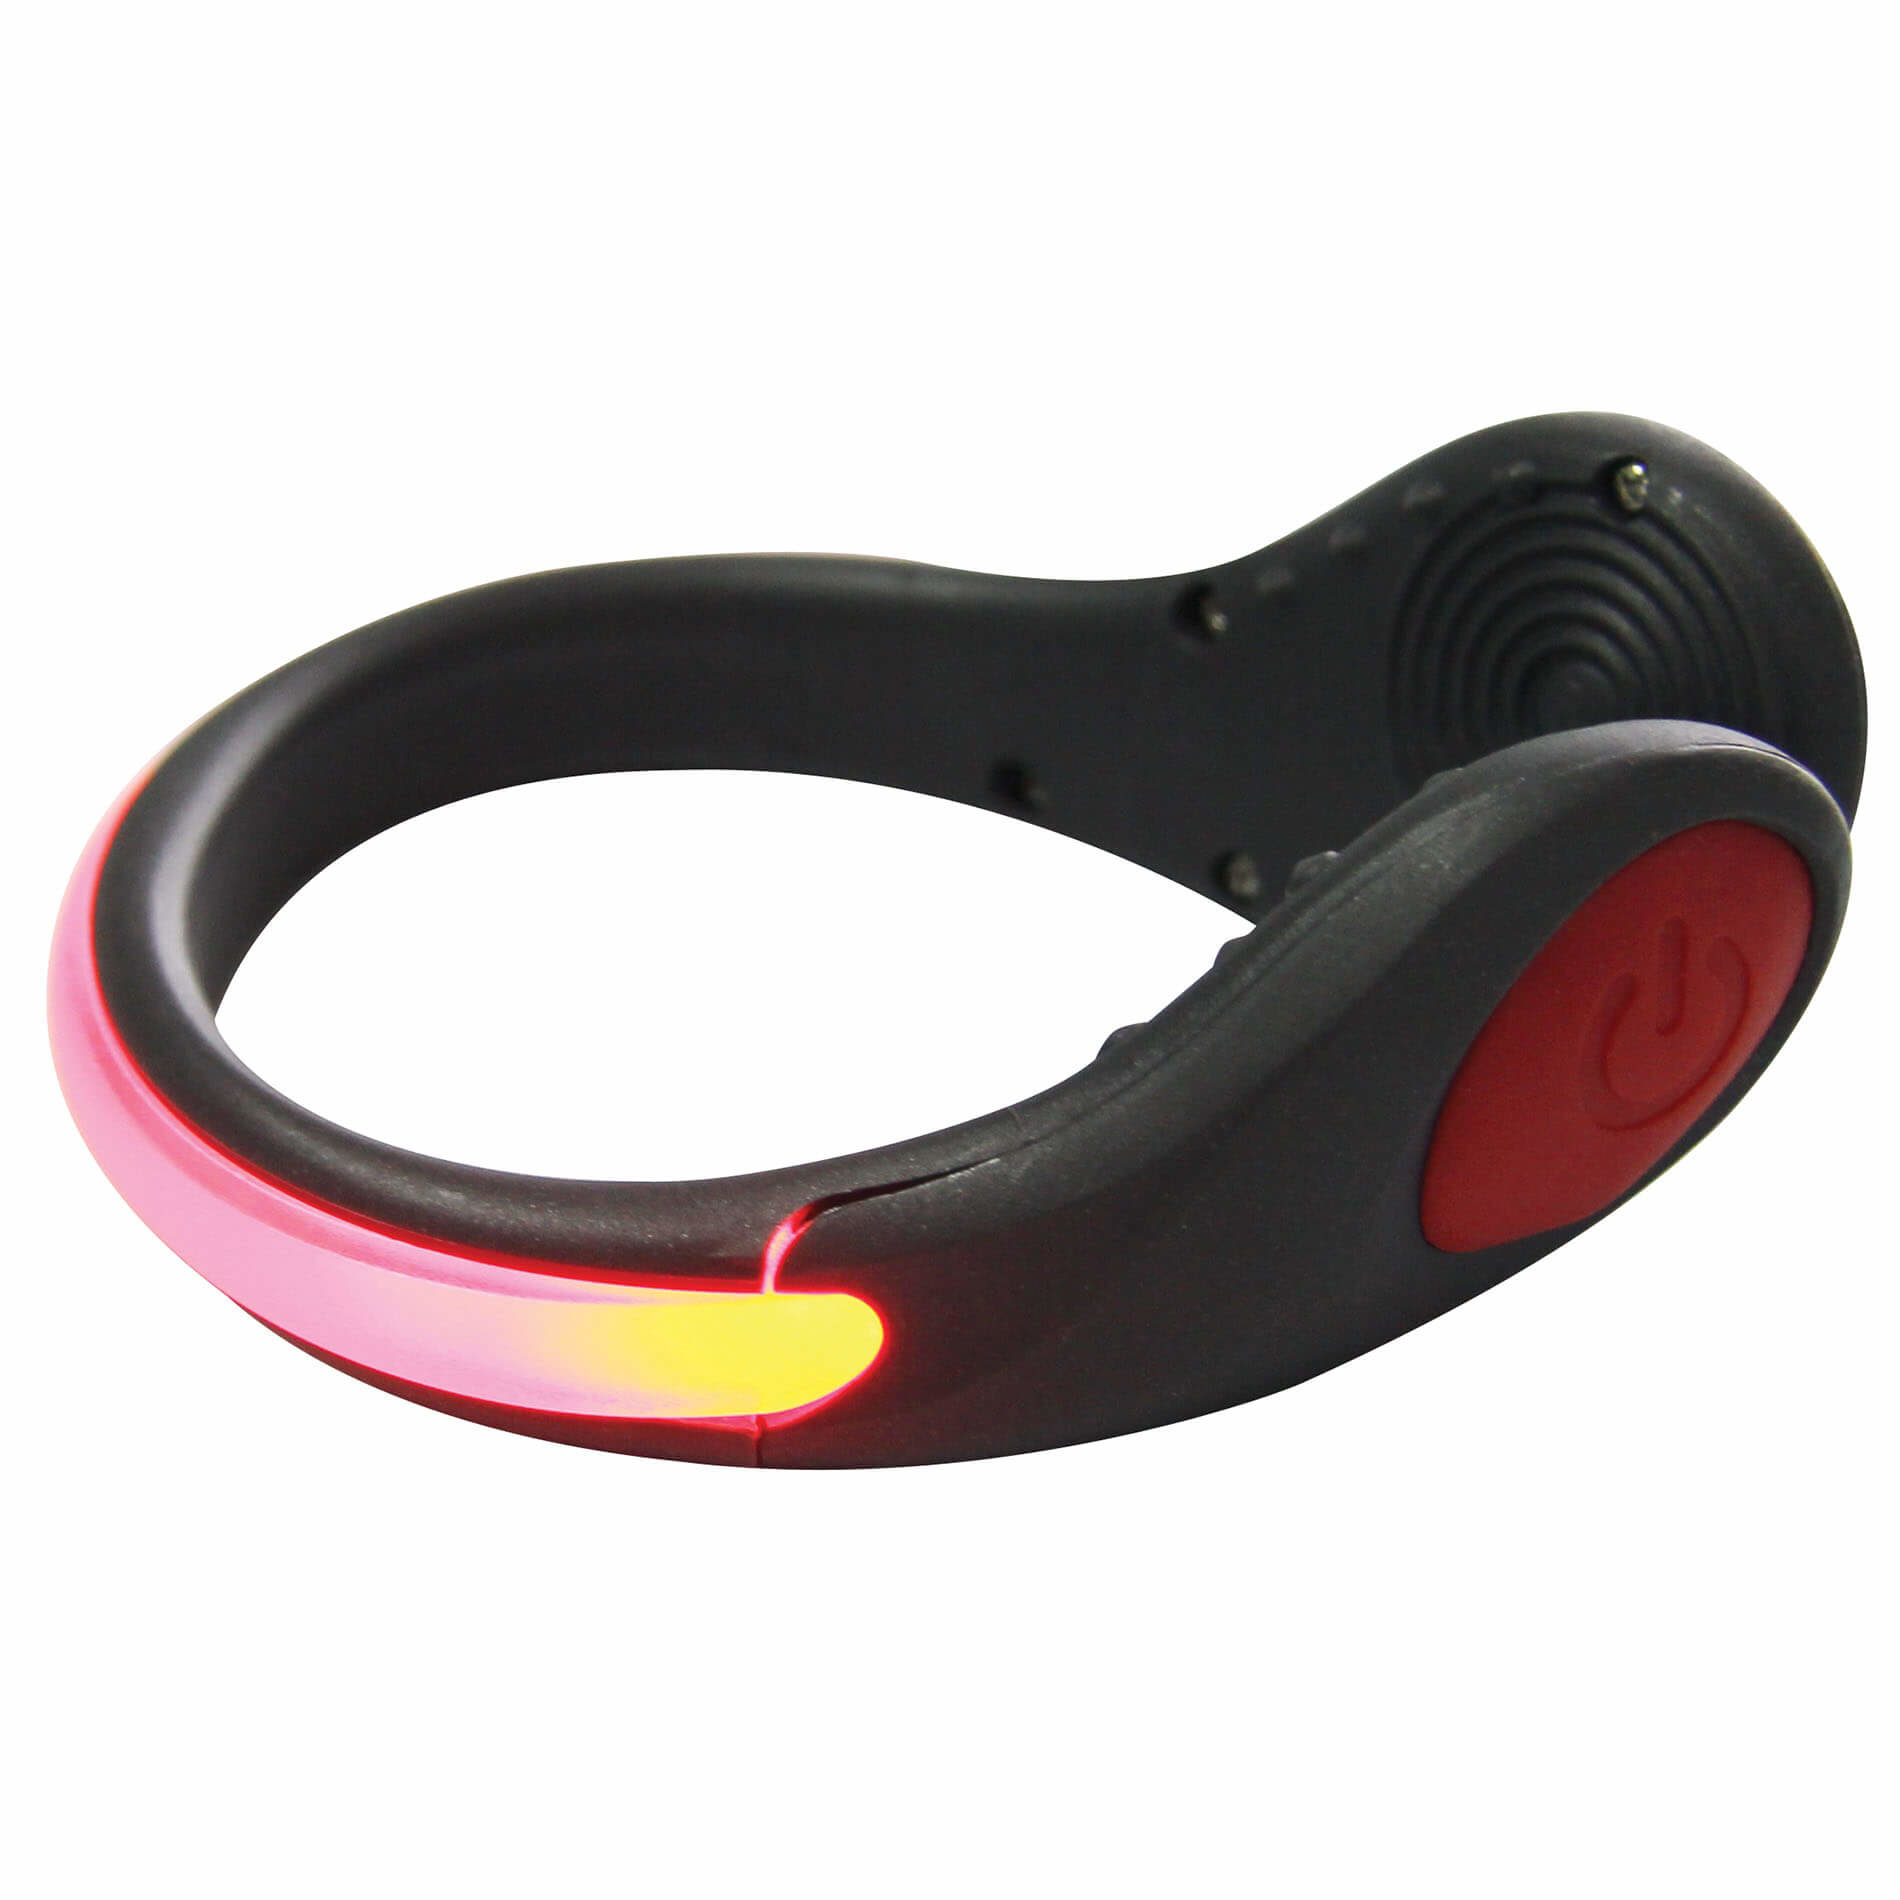 Shoe clip light night safety warning LED strong light shoe clip running  cycling bicycle LED lighted shoe clip LED Luminous Clip